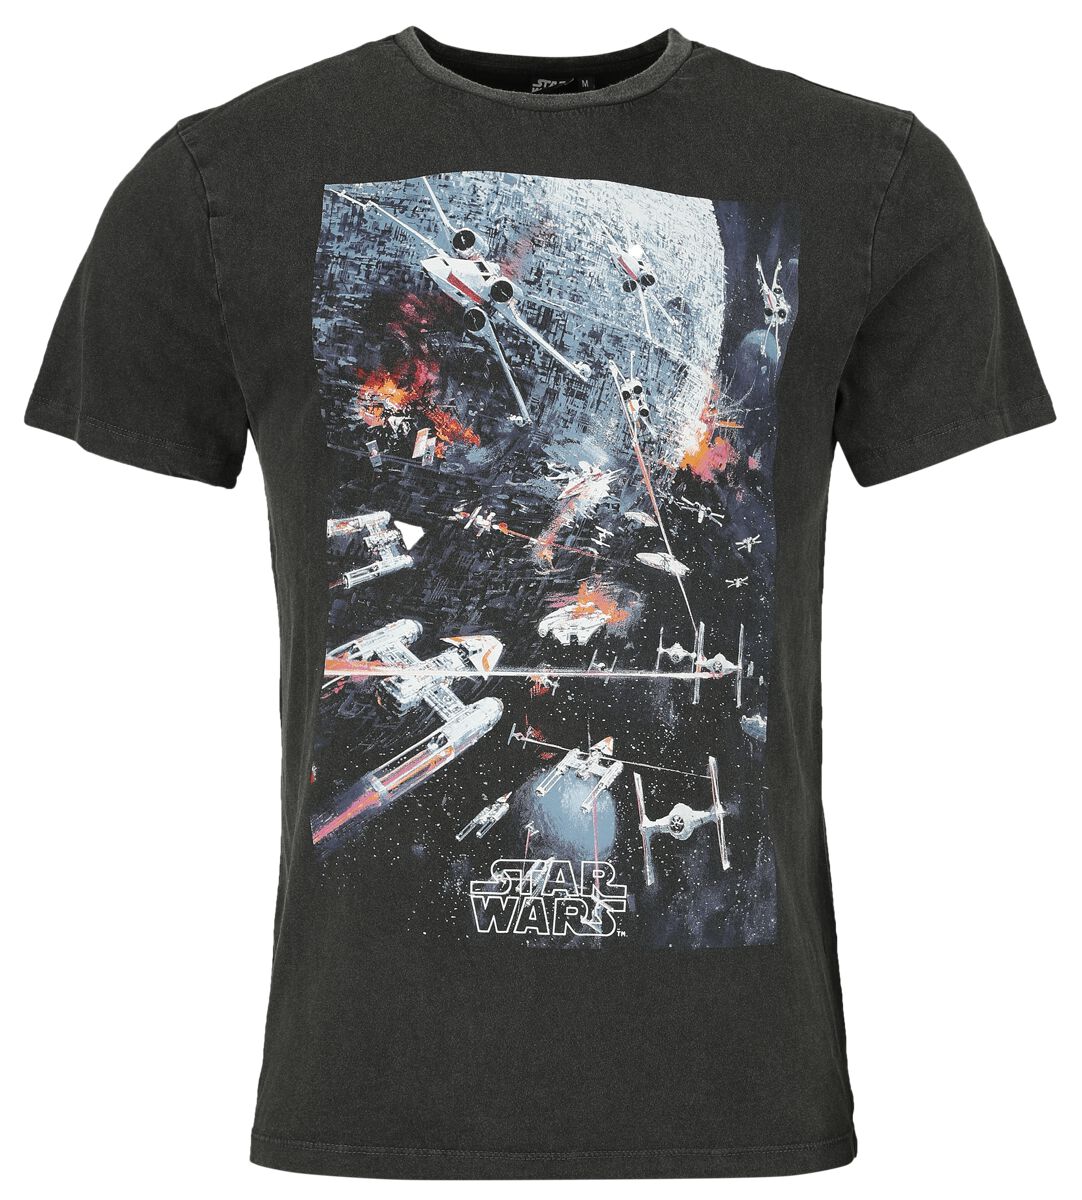 Star Wars T-Shirt - Classic - Space War - S bis XL - für Männer - Größe XL - schwarz  - Lizenzierter Fanartikel